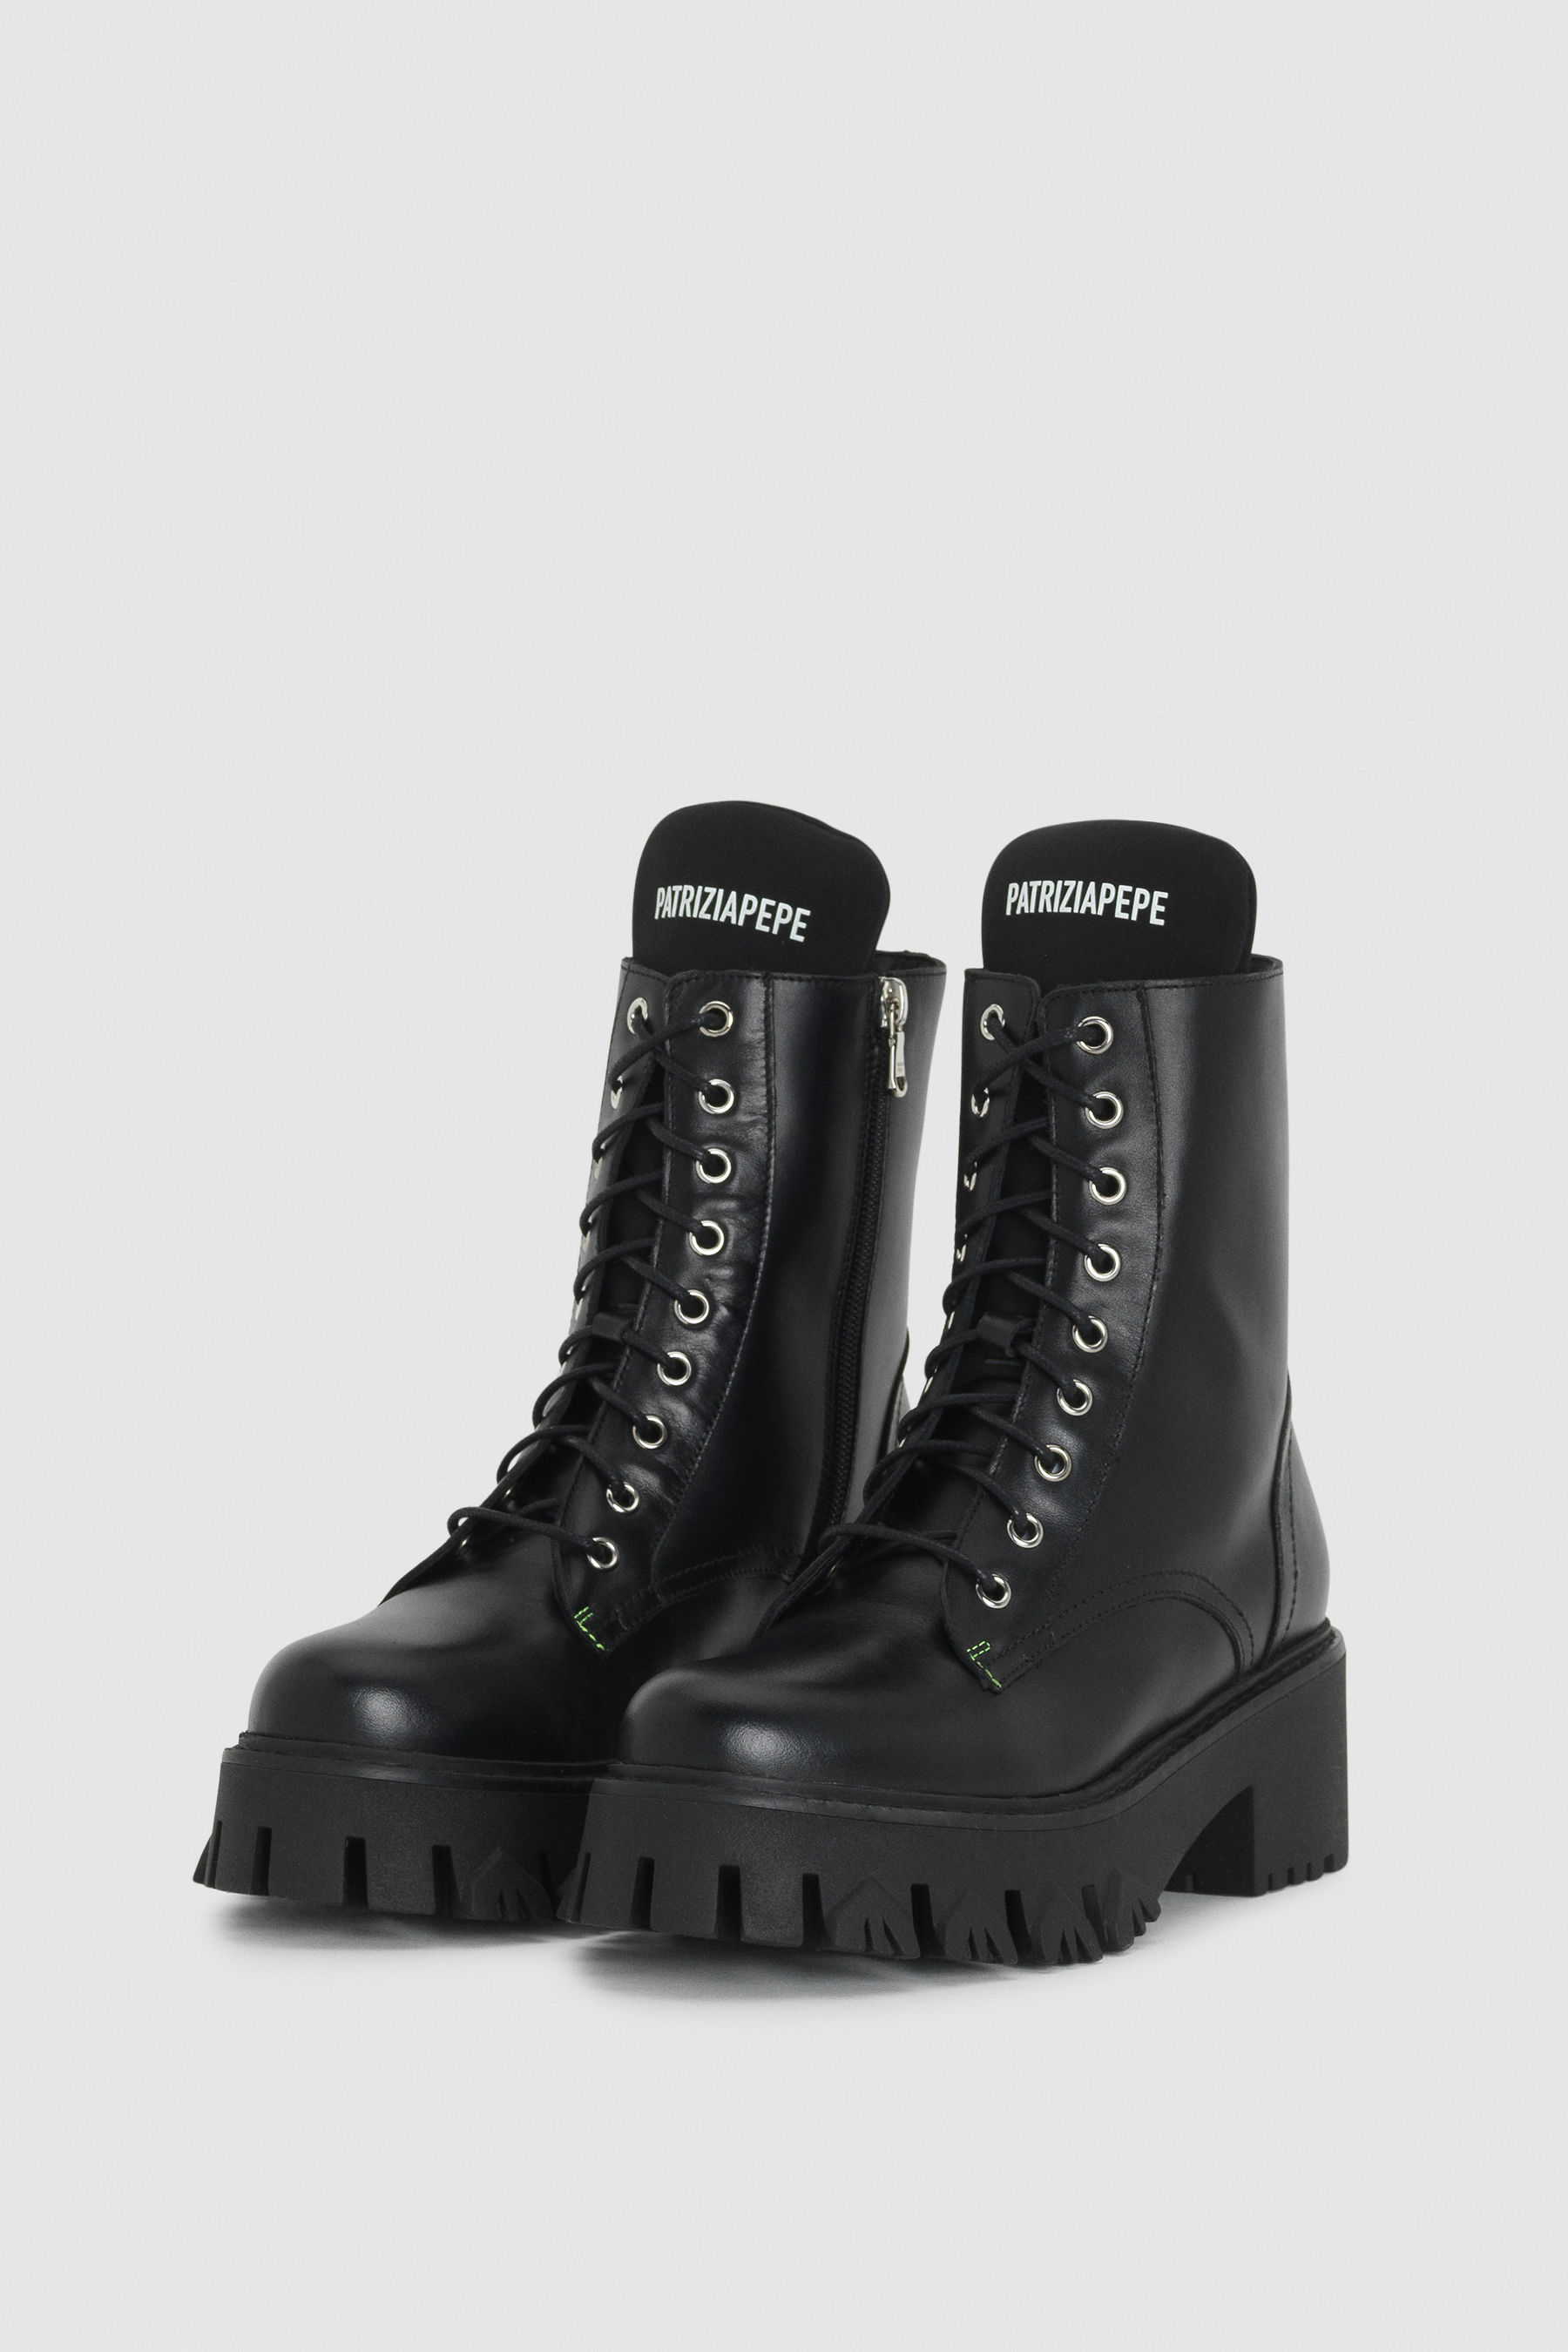 lace up black biker boots